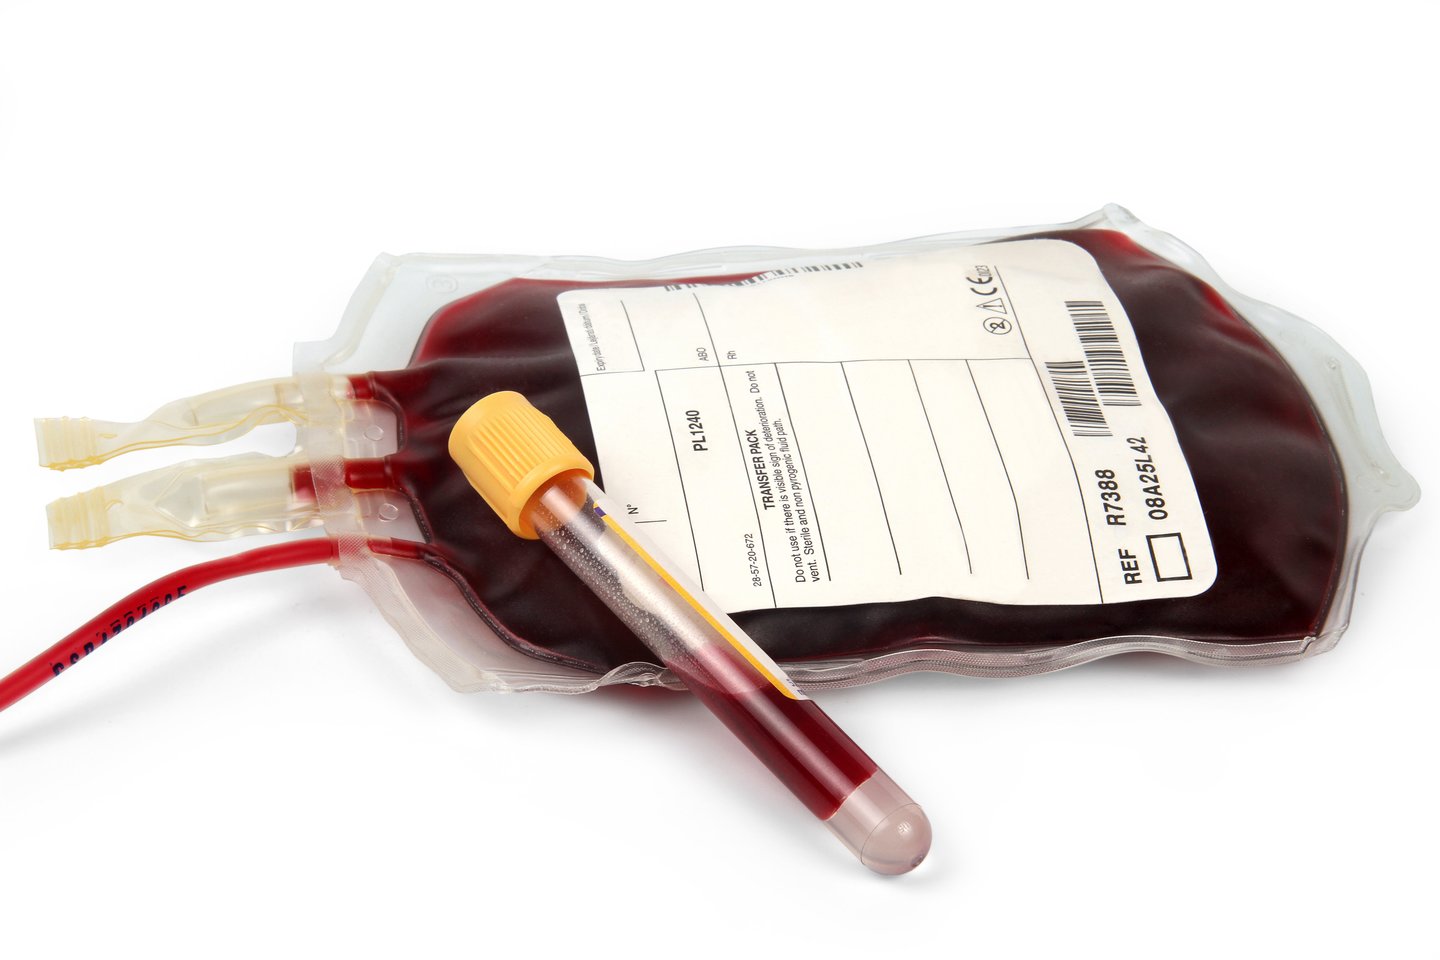  Karo metu Ukraina niekada negavo donorų kraujo iš užsienio partnerių.<br> 123rf nuotr.